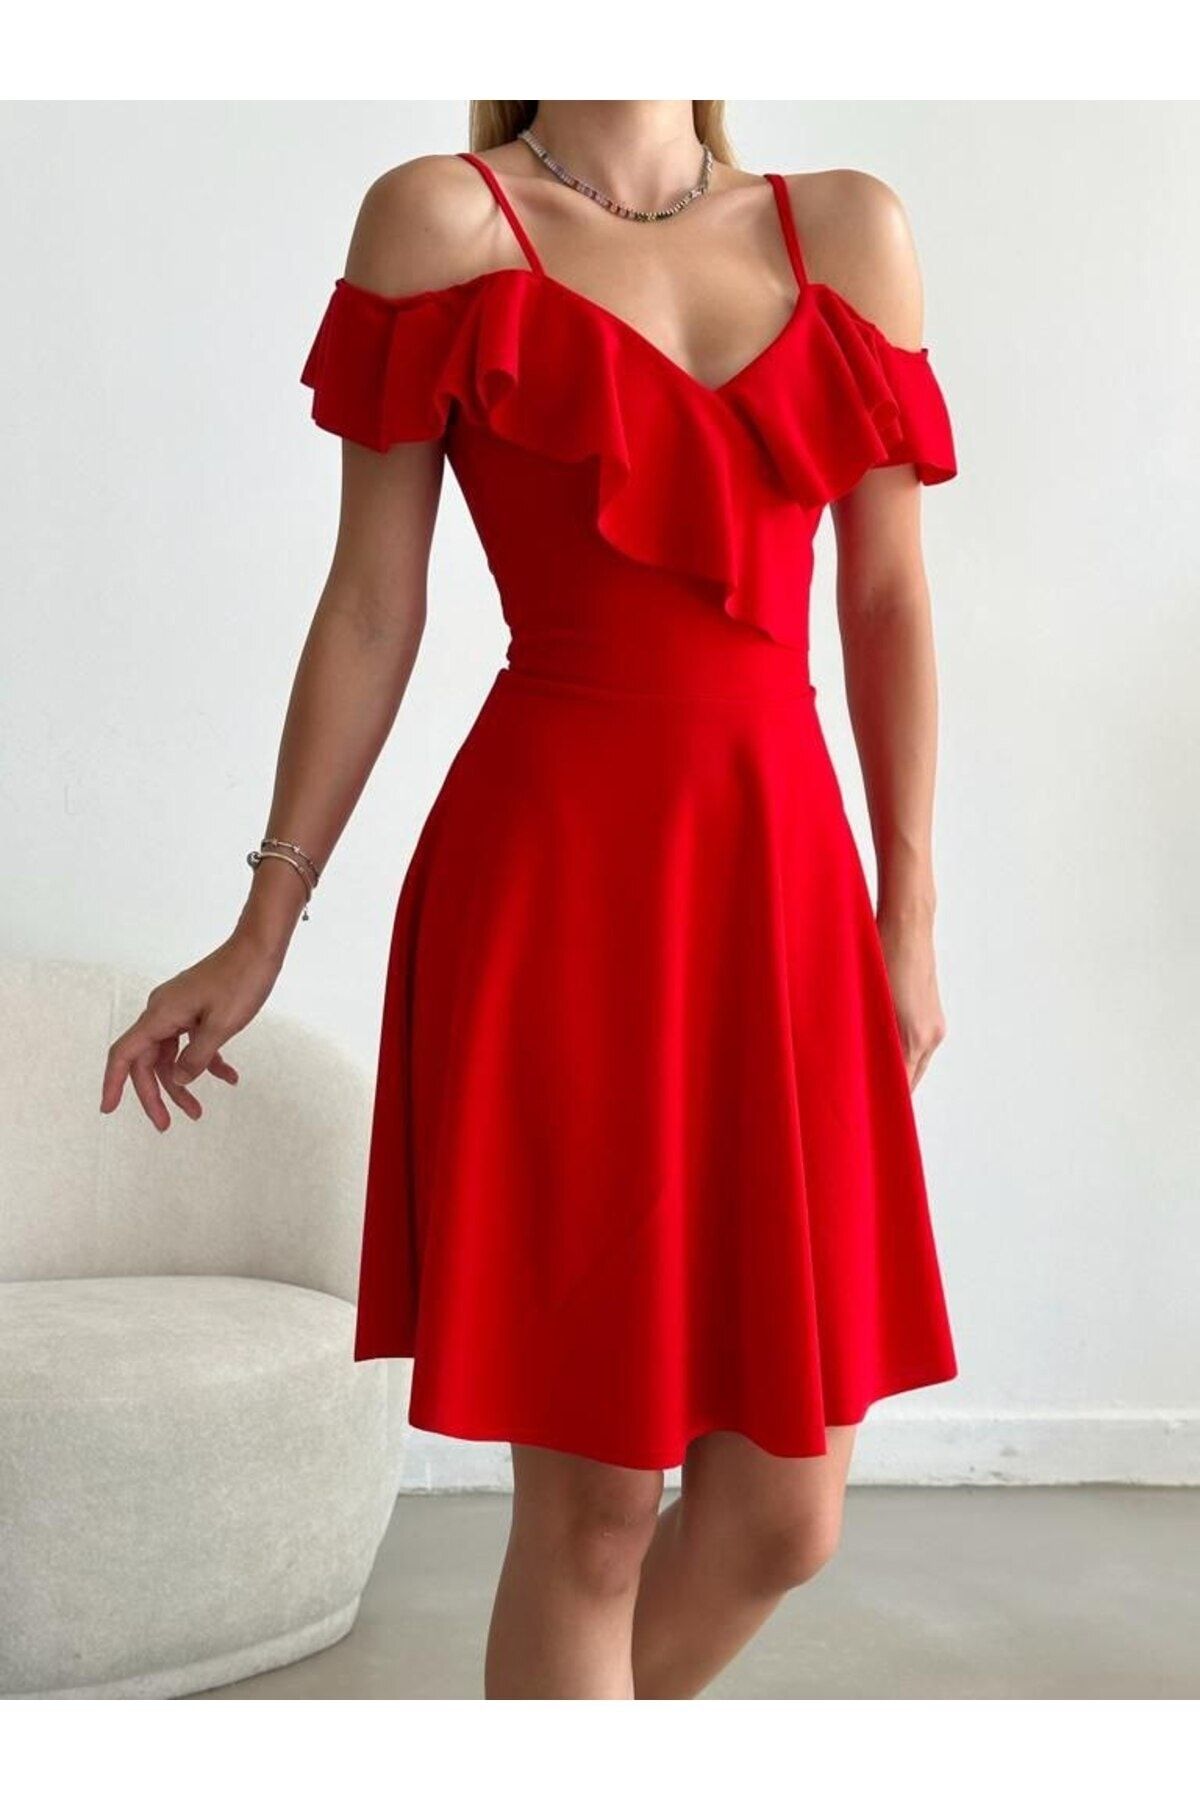 Secret Passion Lingerie Esnek Krep Kumaş Yakası Volan Detaylı Ince Askılı Kiloş Kırmızı Abiye Elbise Gece Elbisesi 077